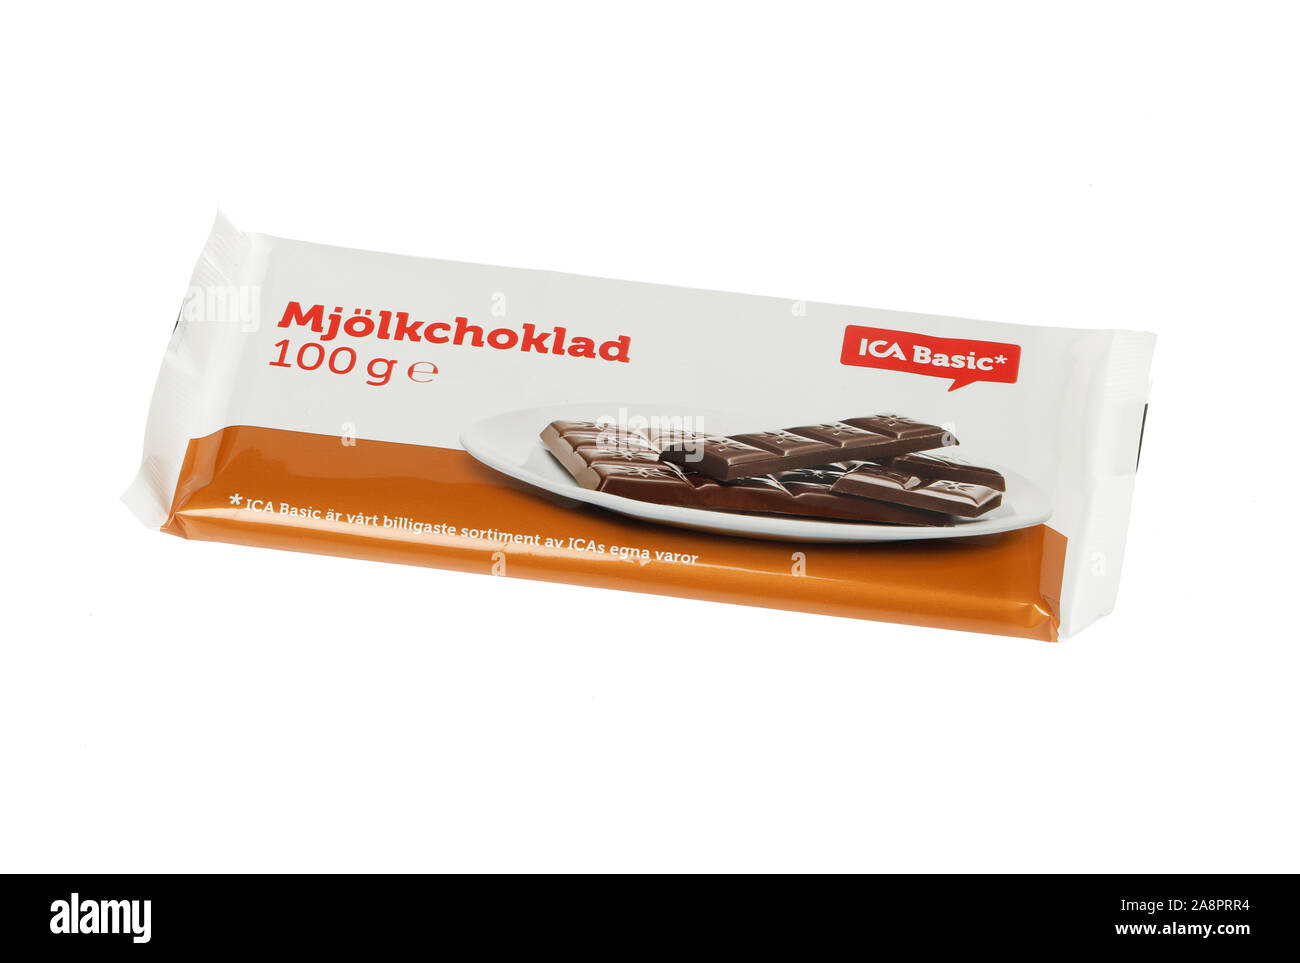 Stoccolma, Svezia - 10 Novembre 2019: una barra di cioccolato al latte con marchio del pacchetto ica di base per il mercato svedese. Foto Stock